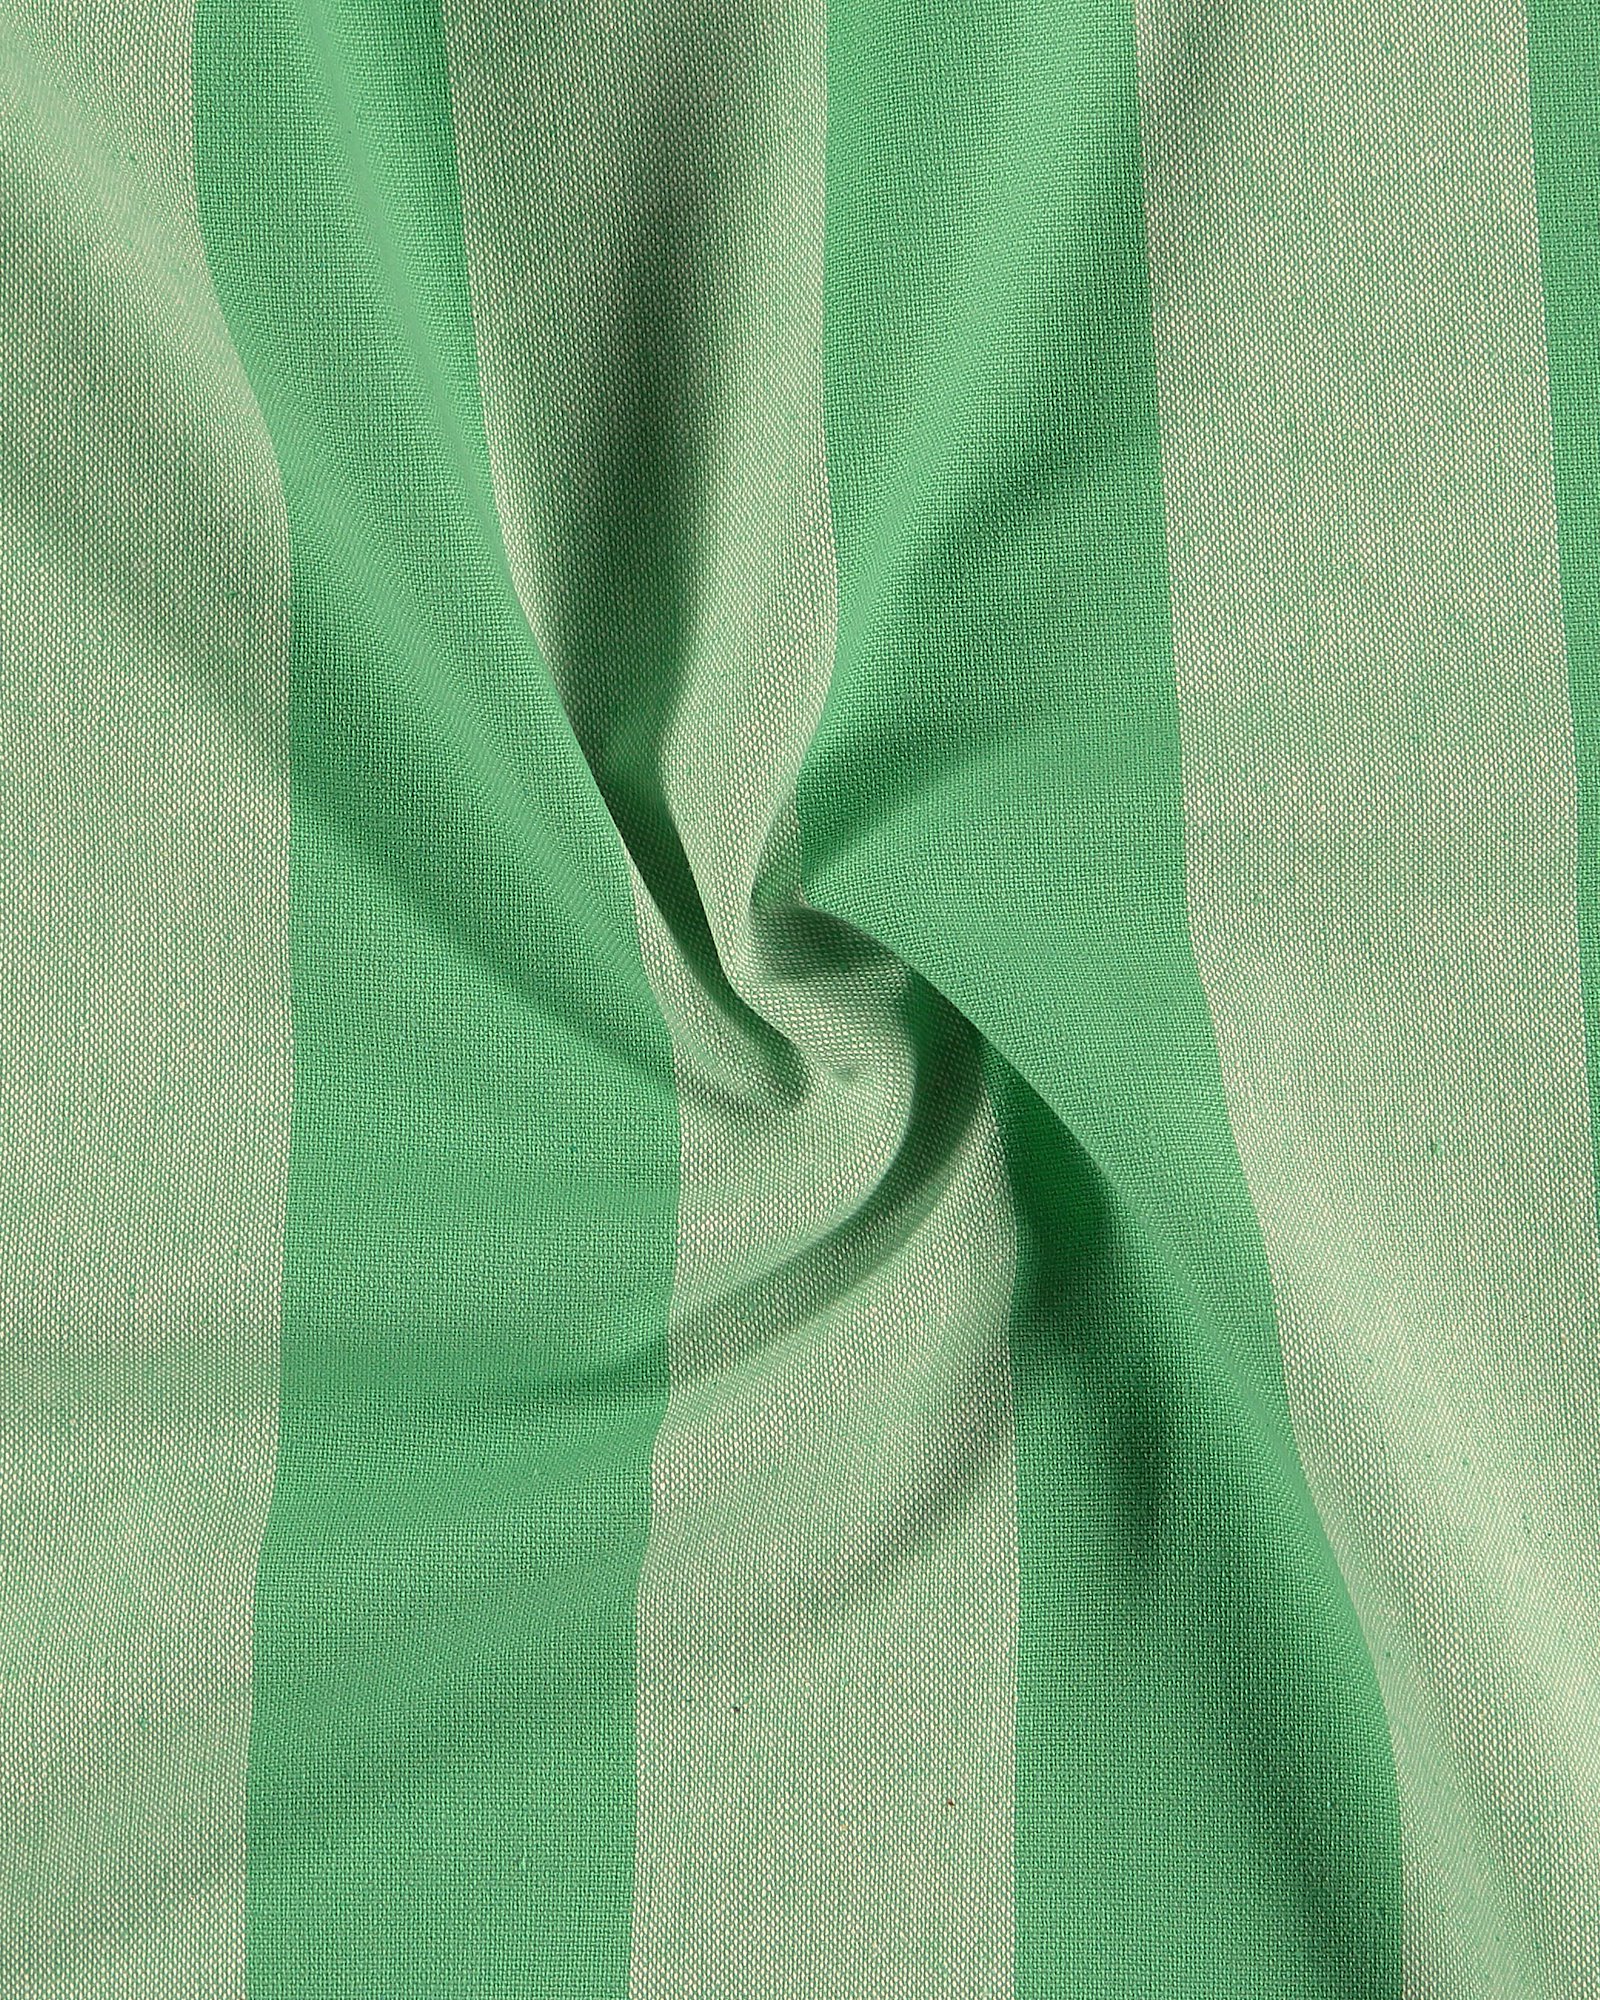 Vevet garnfarget klar lys grønn stripe 816302_pack